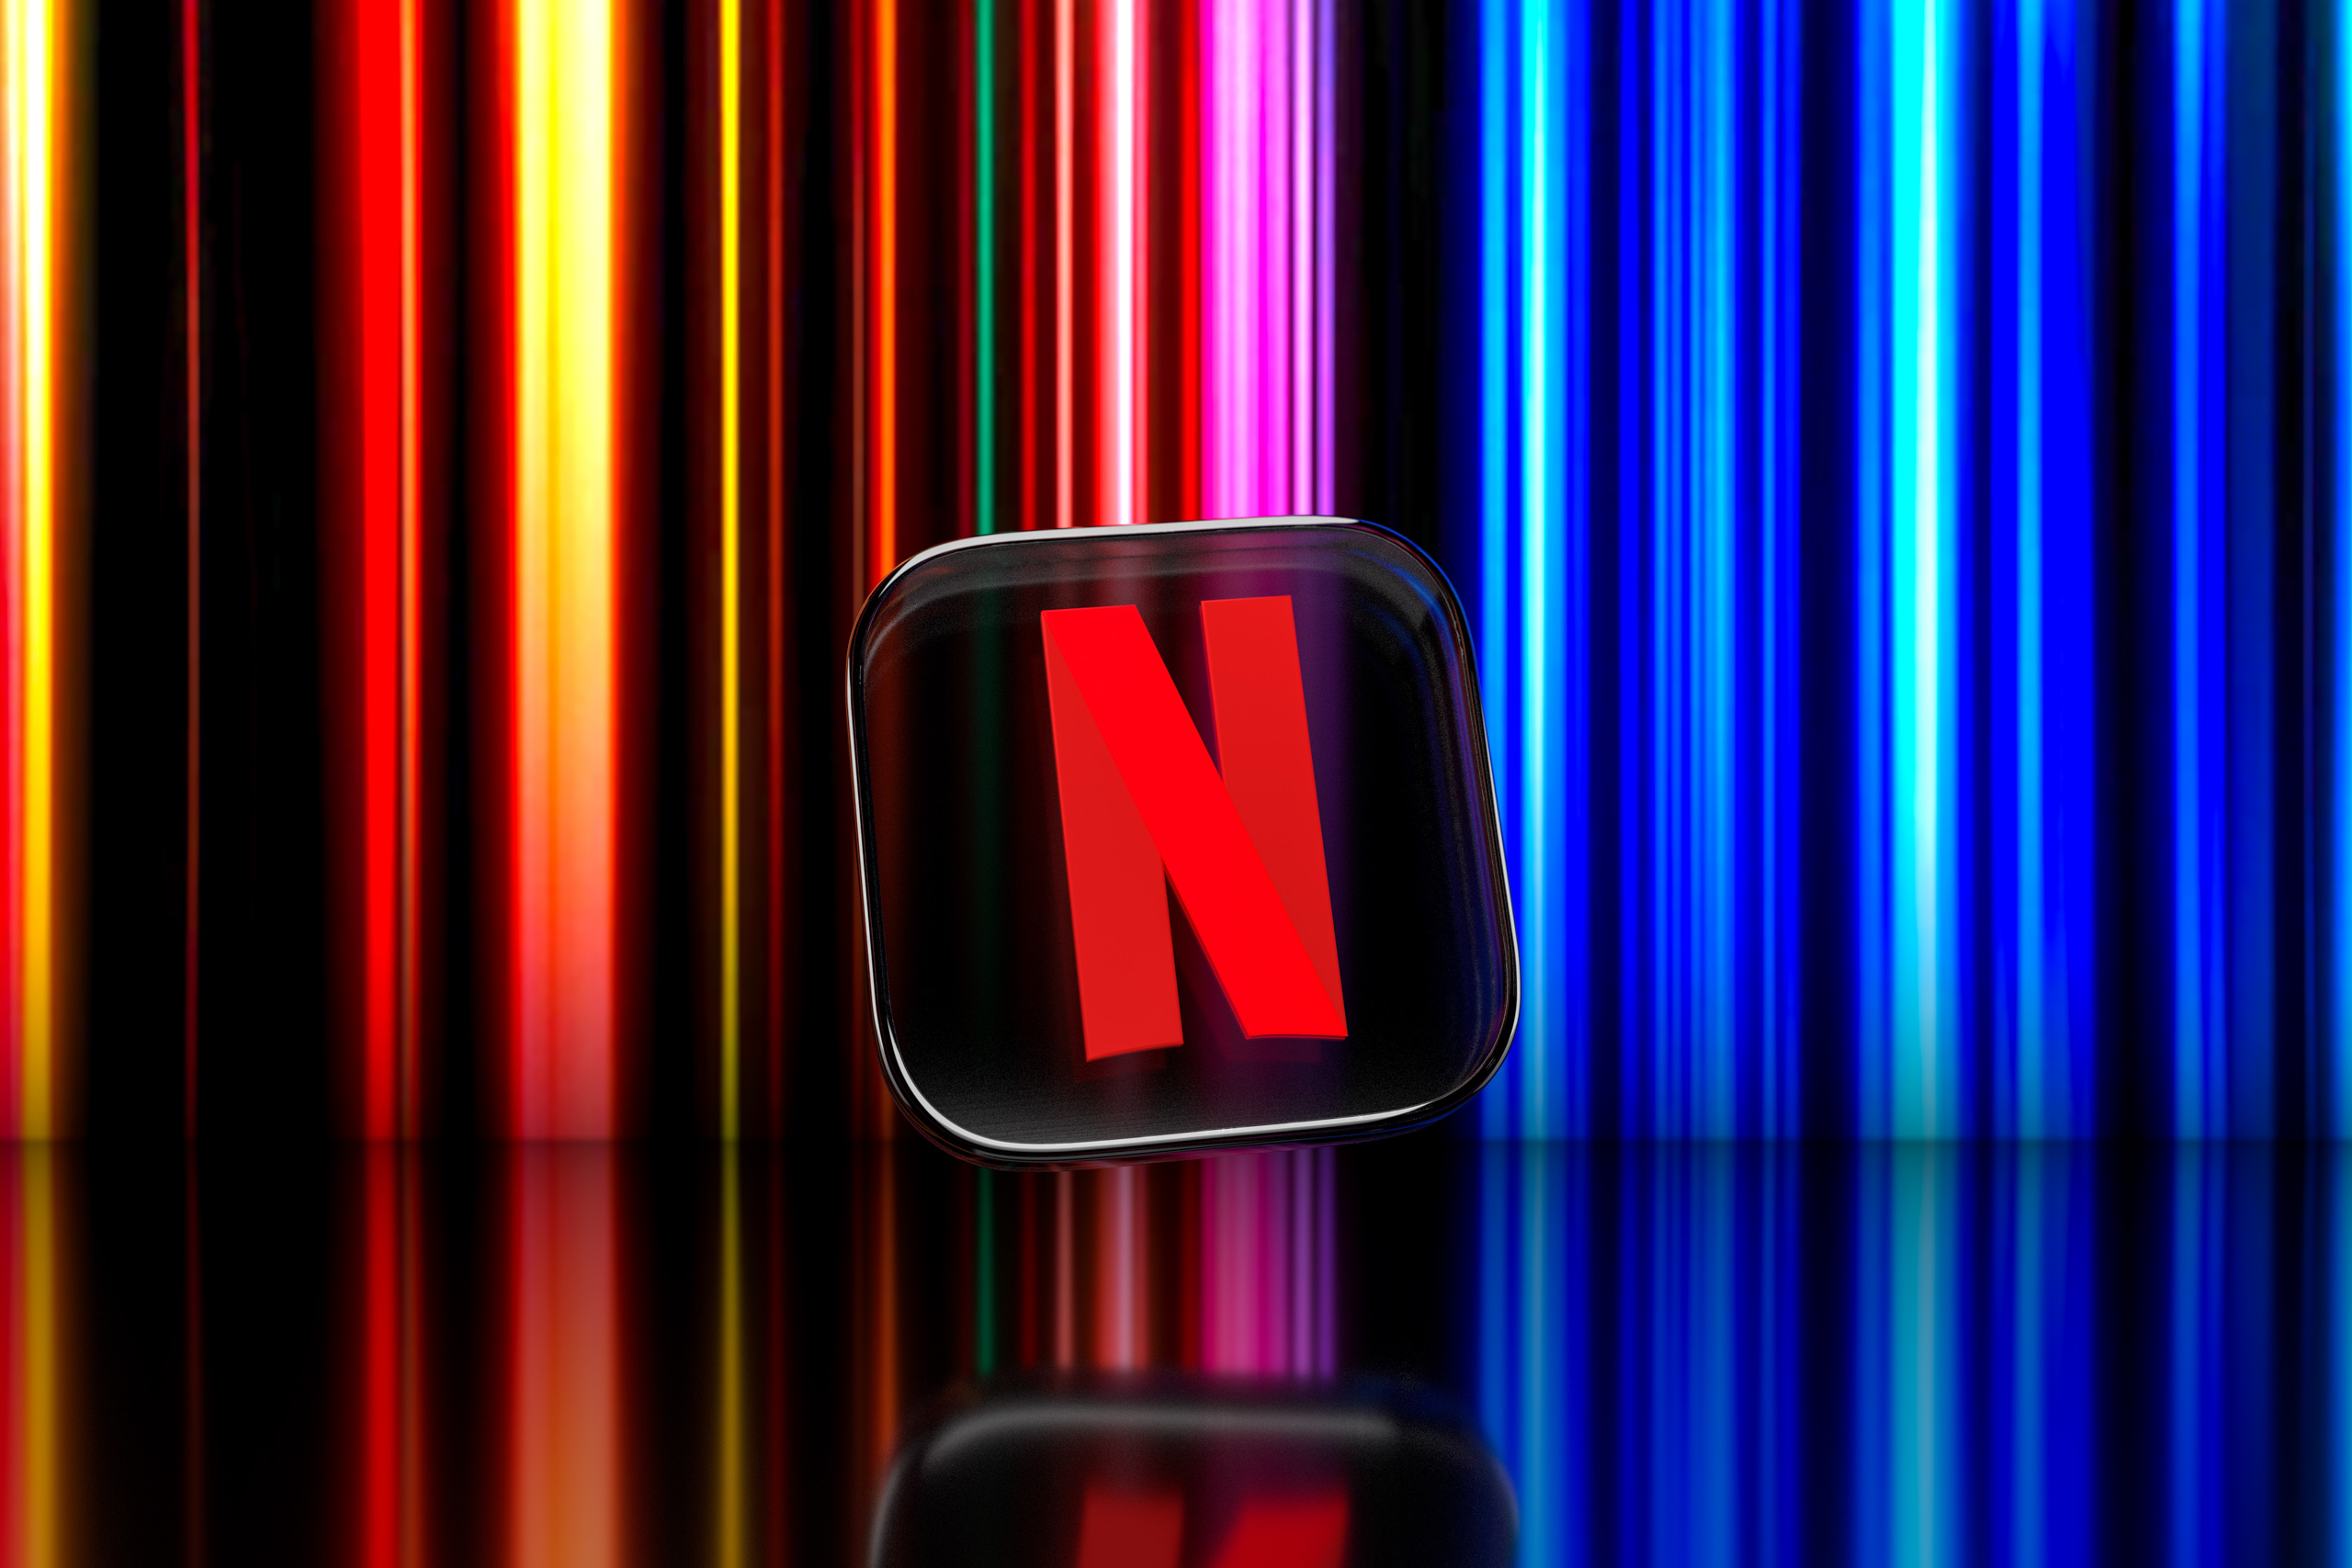 Hướng dẫn cách tải phim Netflix trên di động và máy tính